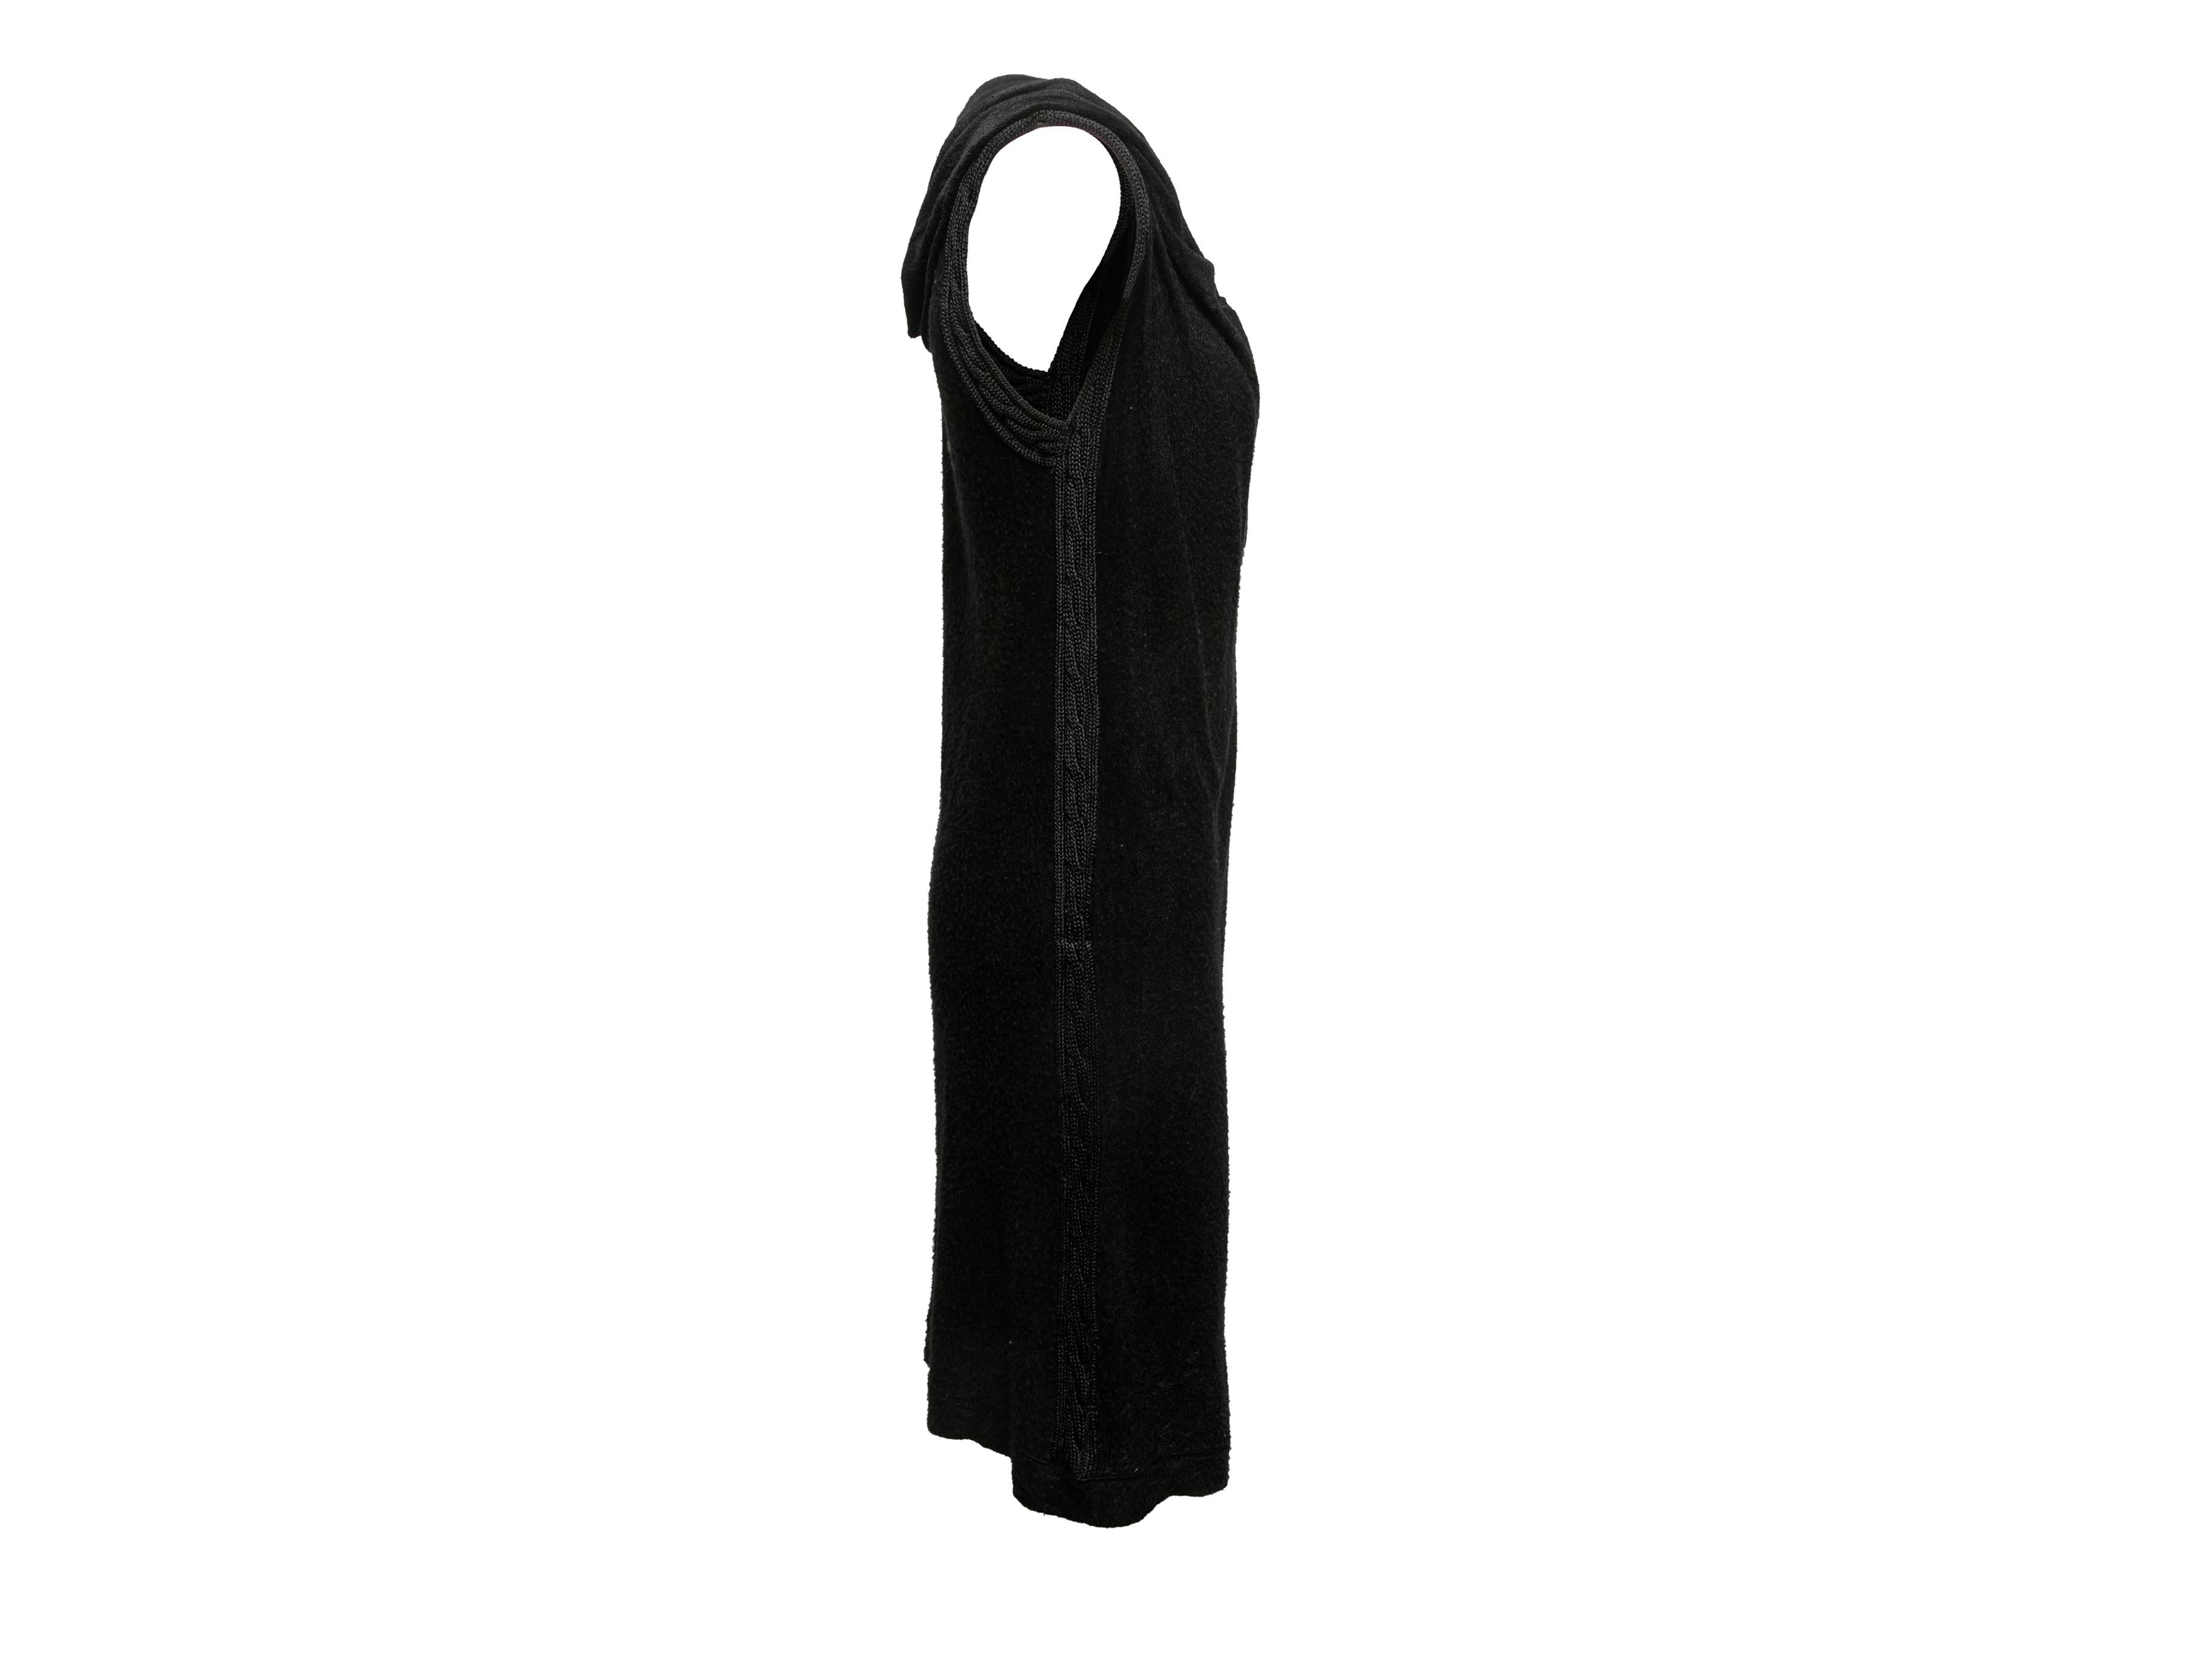 Schwarzes ärmelloses Kleid mit Kapuze von Gaultier². Kordelzug am vorderen Halsausschnitt. 28